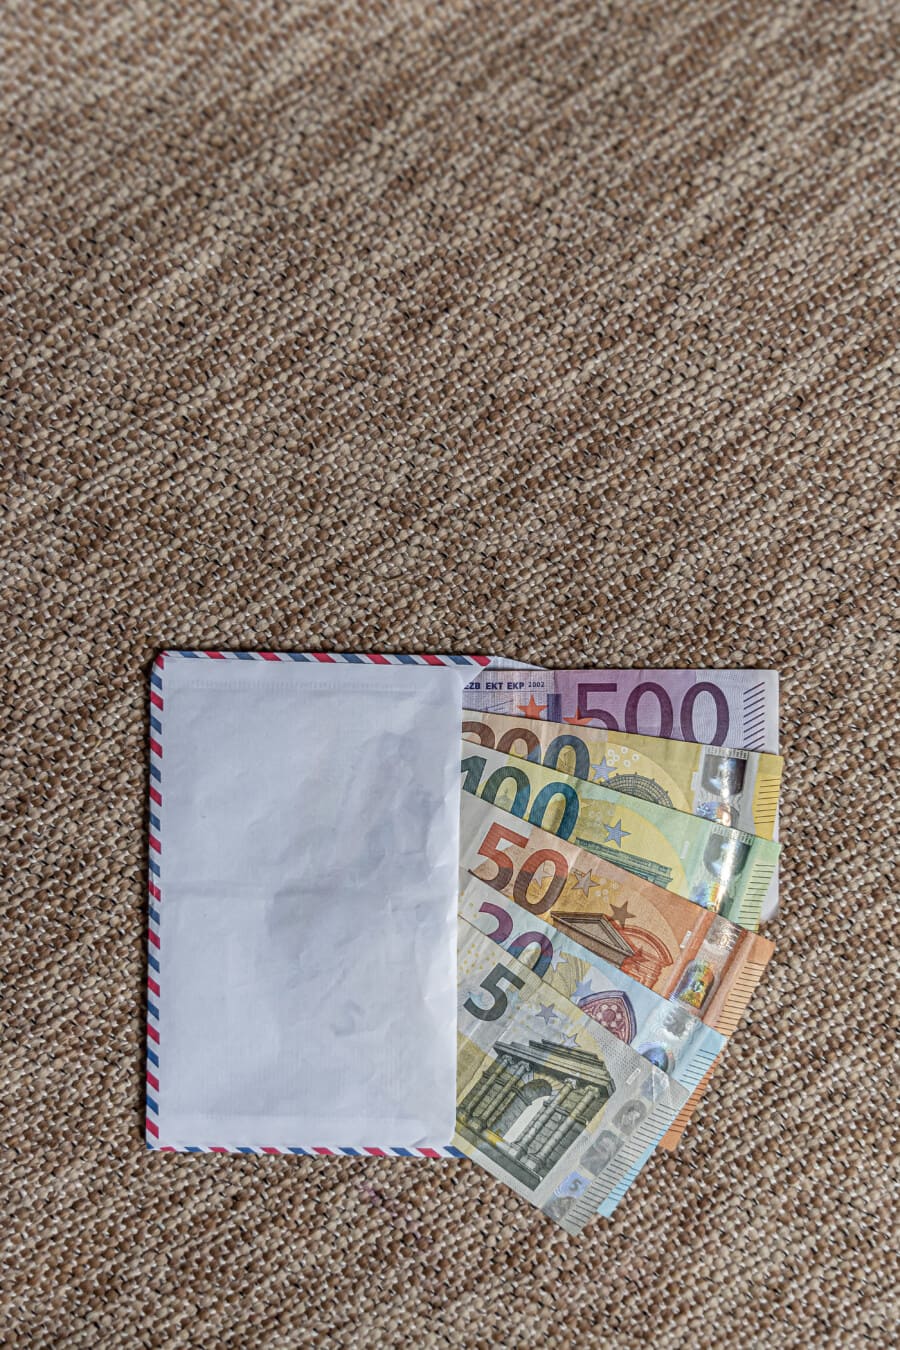 Banconote di carta dell’Unione europea in busta (€5, €20, €50, €100, €200, €500)